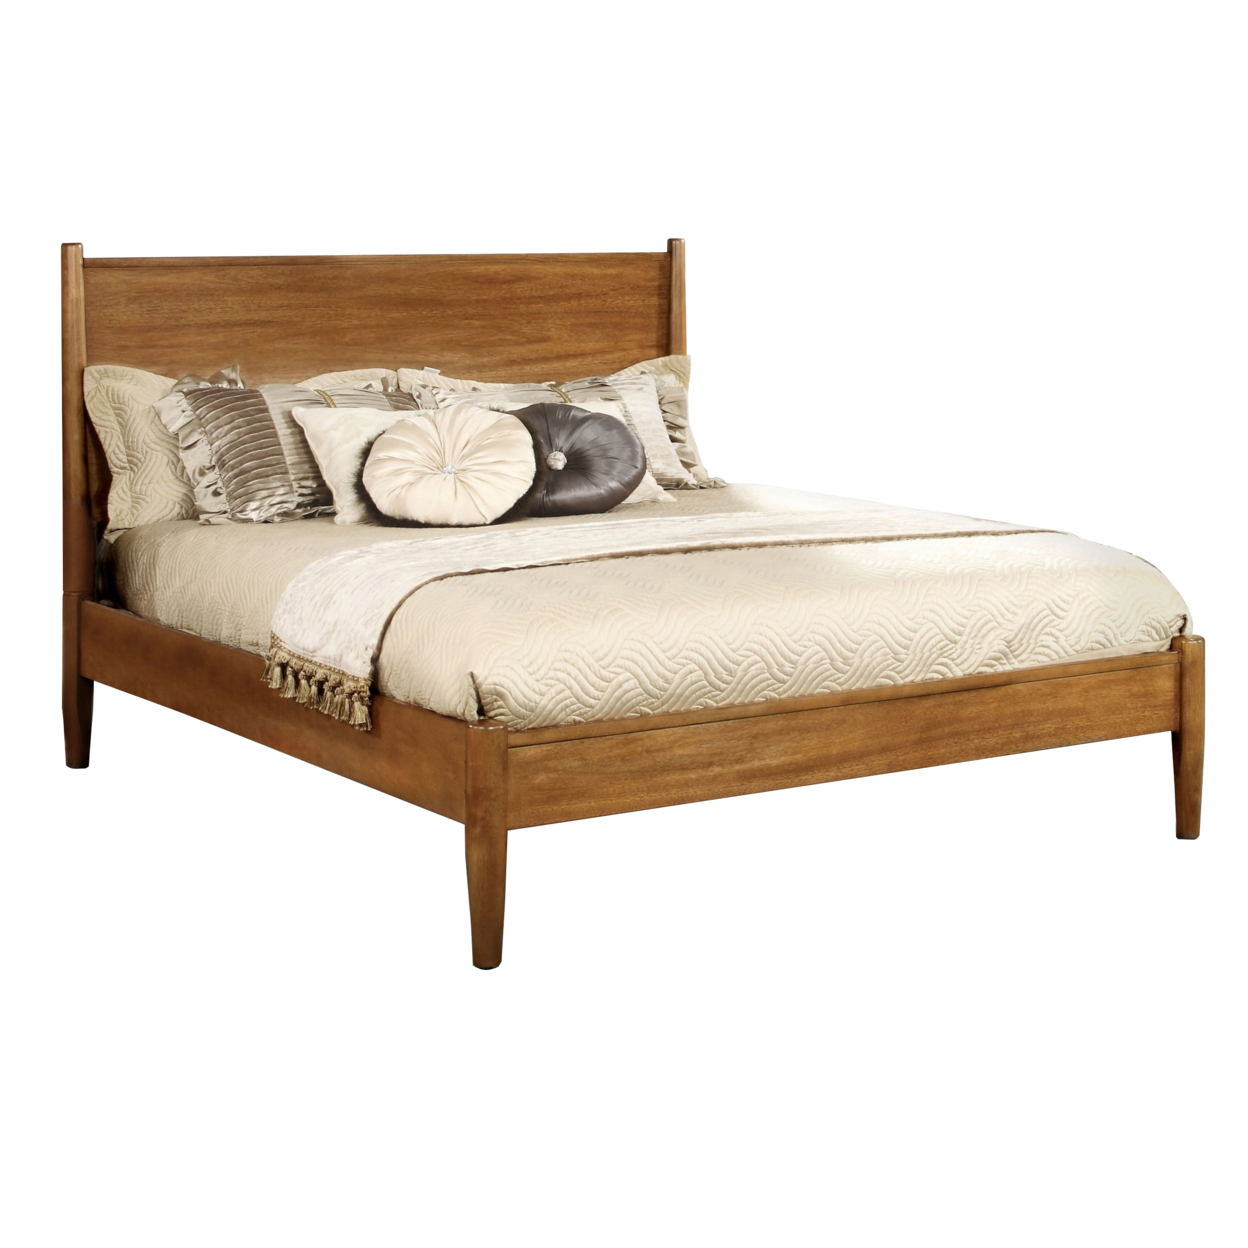 Wooden Full Size Bed With Panel Headboard, Oak Brown- Saltoro Sherpi